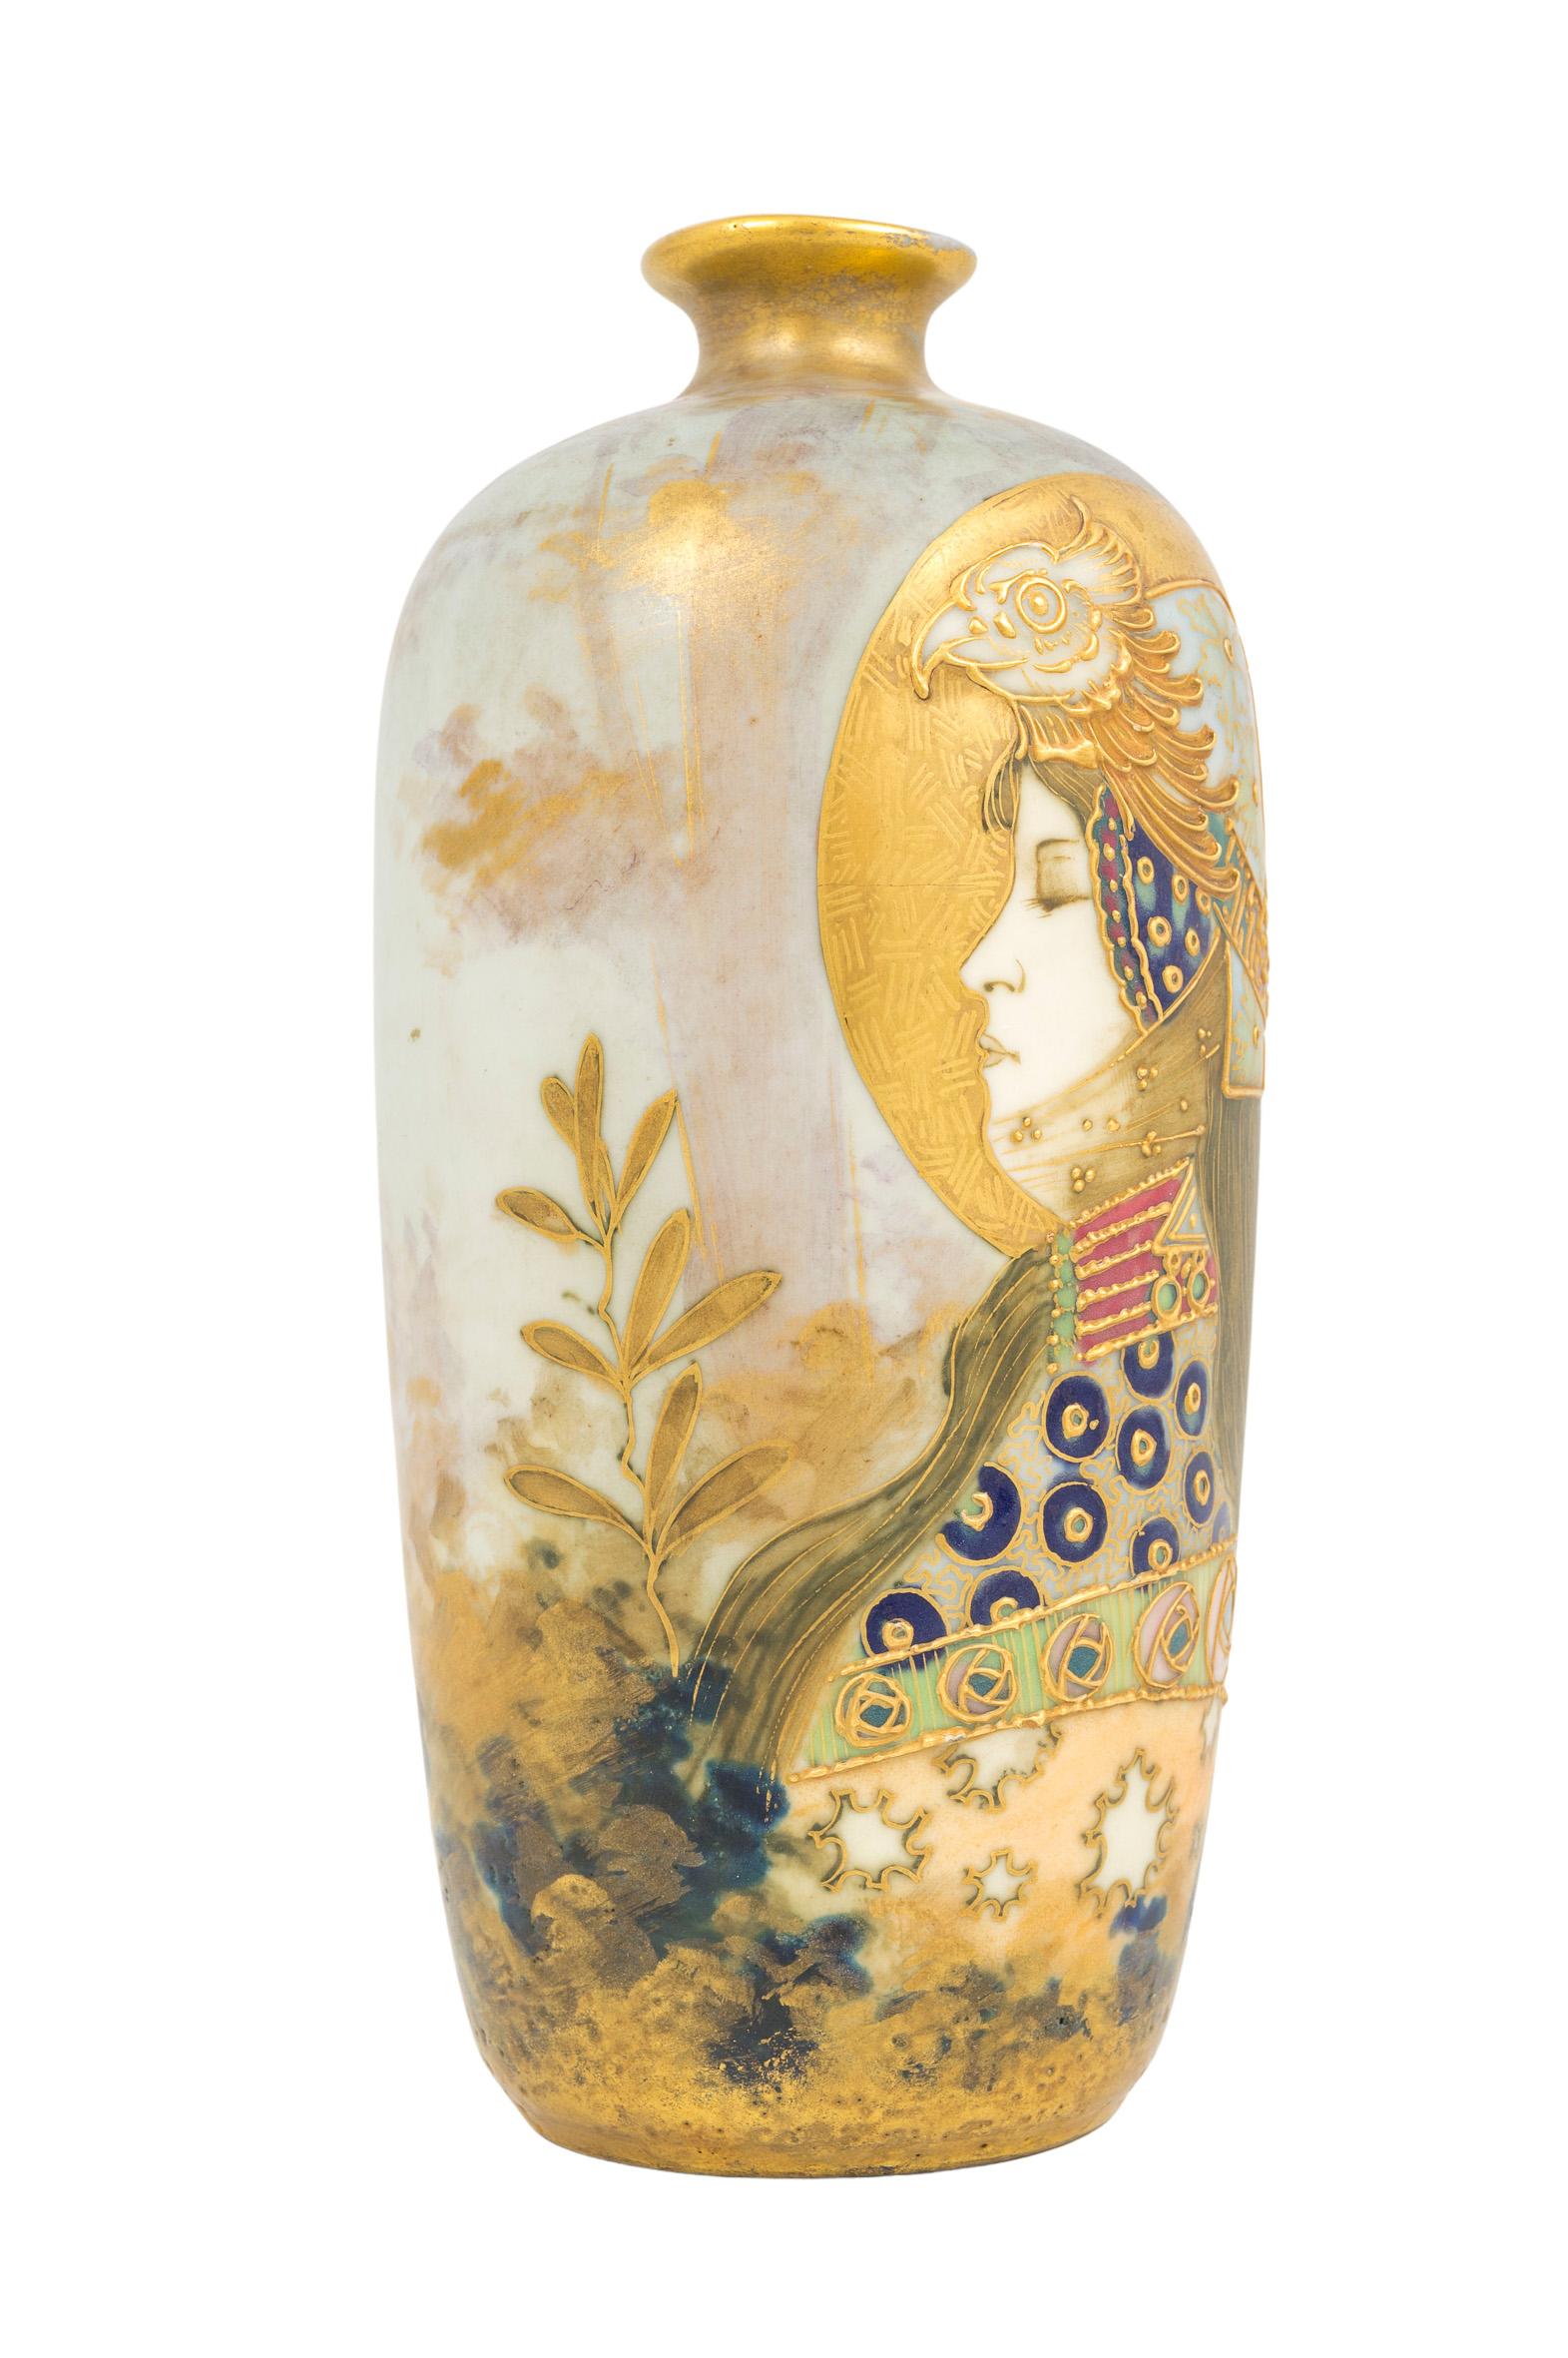 Gilt Art Nouveau Ceramic Portrait Allegory Vase Gold Amphora circa 1900 Austria